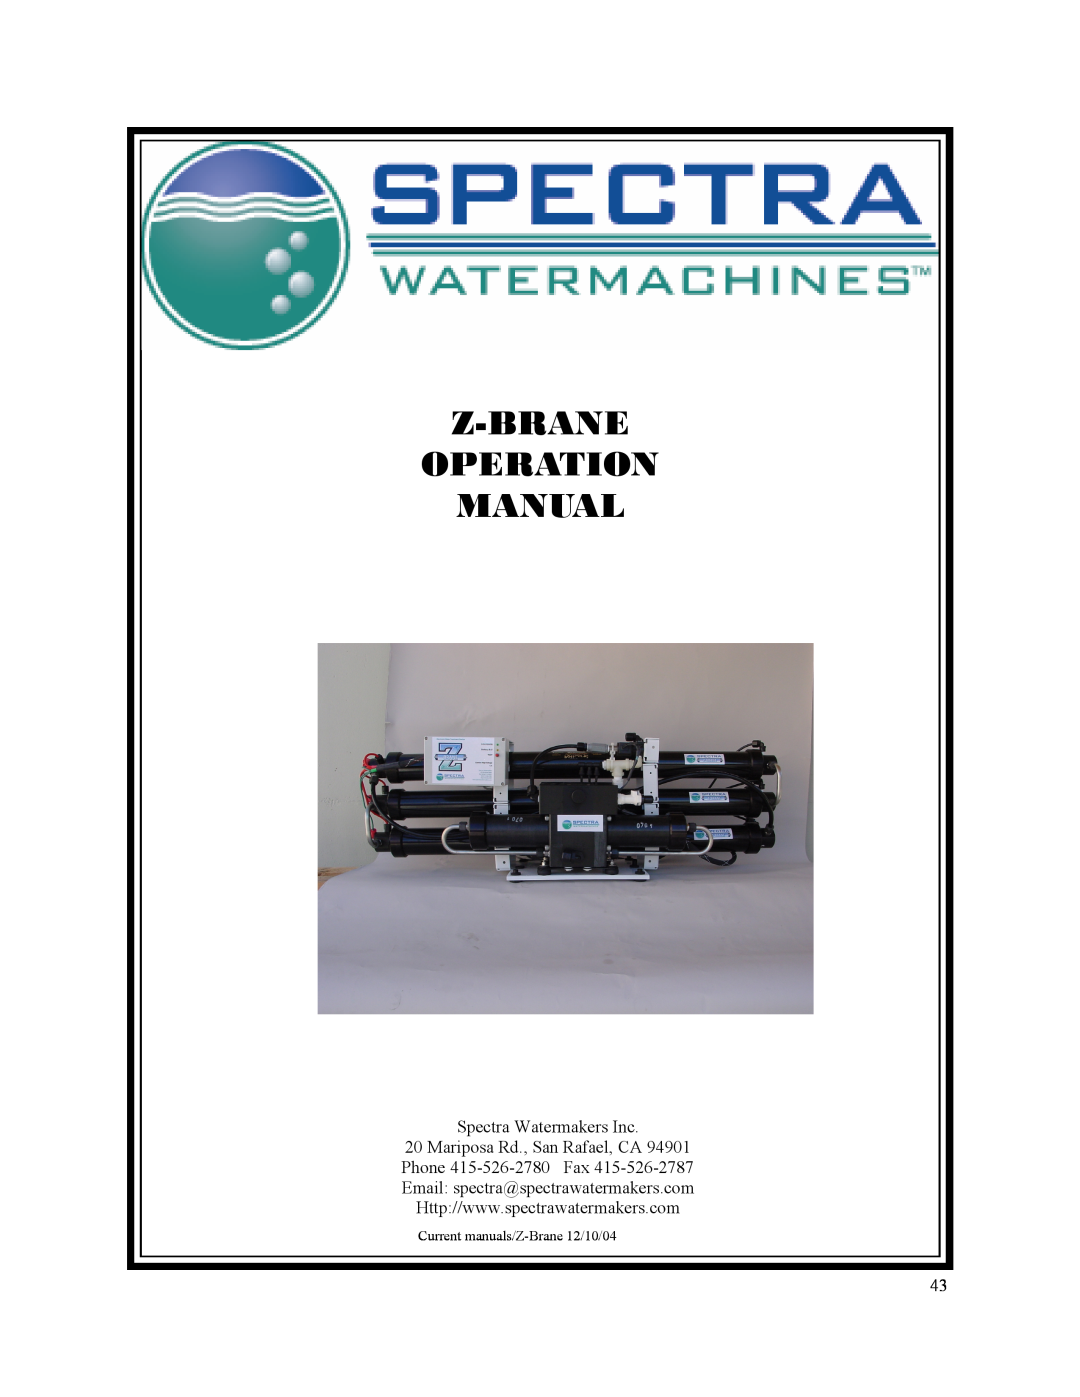 Spectra Watermakers MPC-5000 owner manual Z-Brane Operation Manual, Spectra Watermakers Inc, Mariposa Rd., San Rafael, CA 